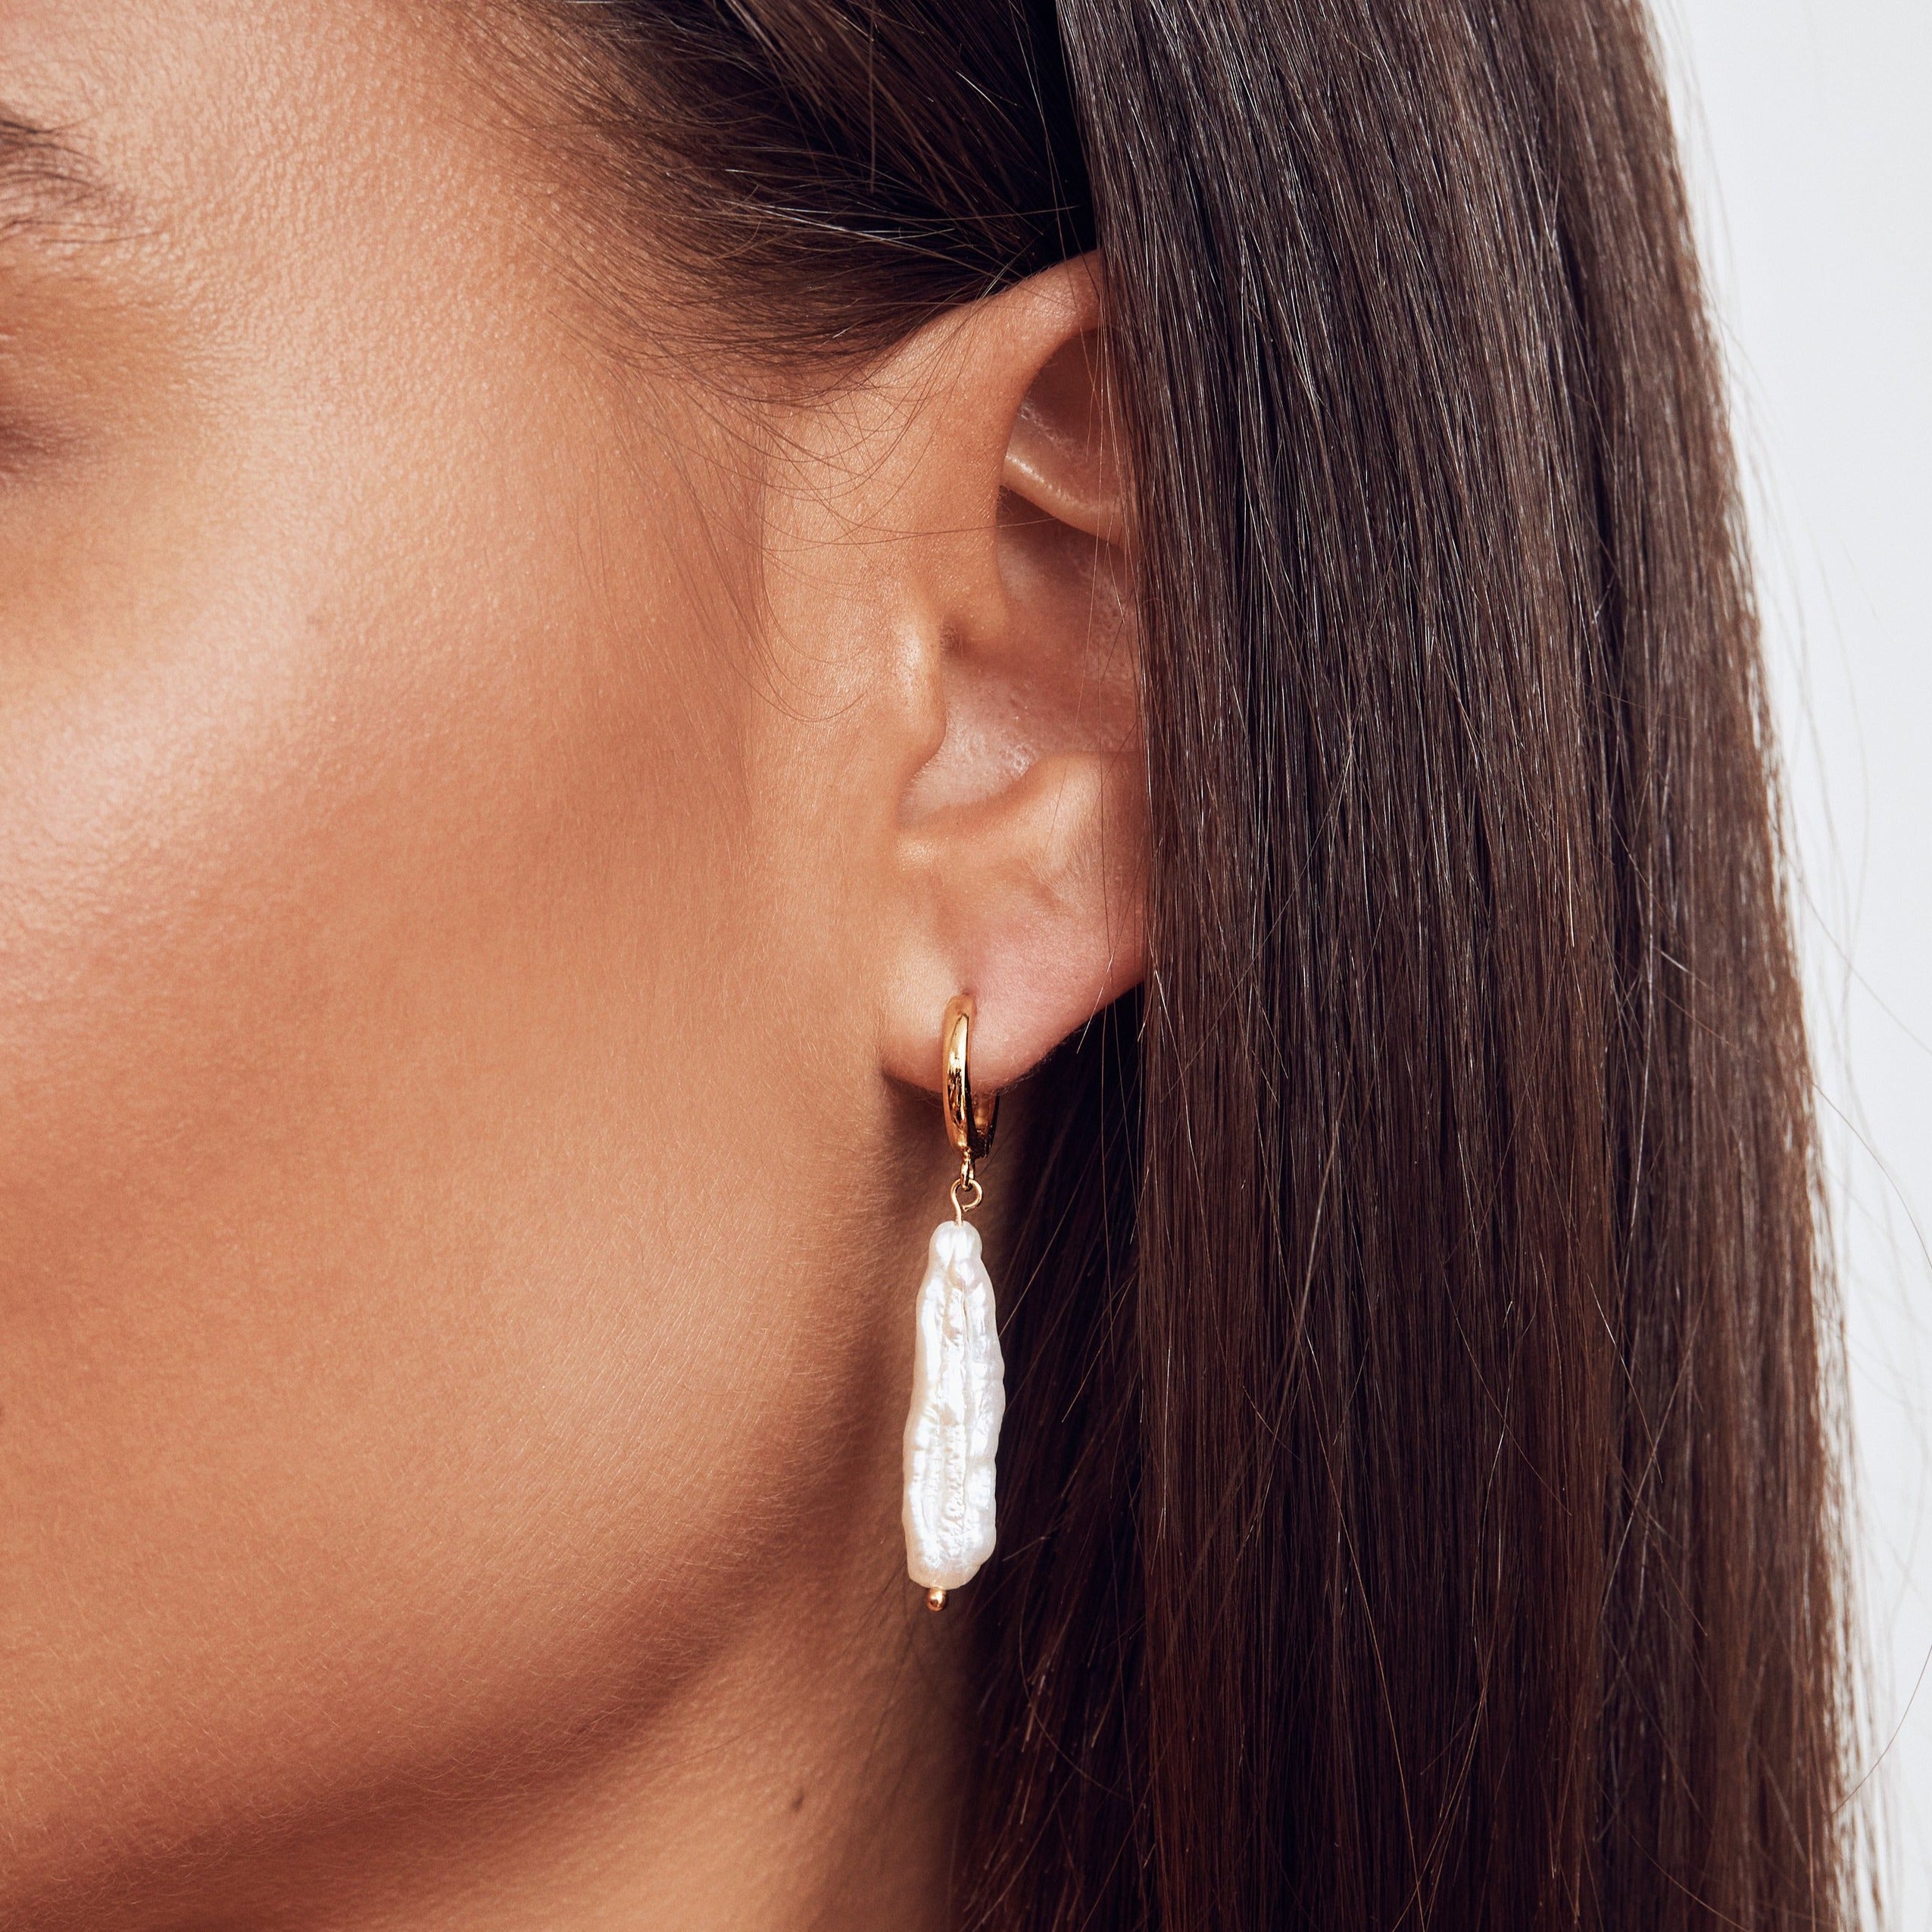 gold baroque pearl shard hoop earring in one ear lobe of a brunette woman 